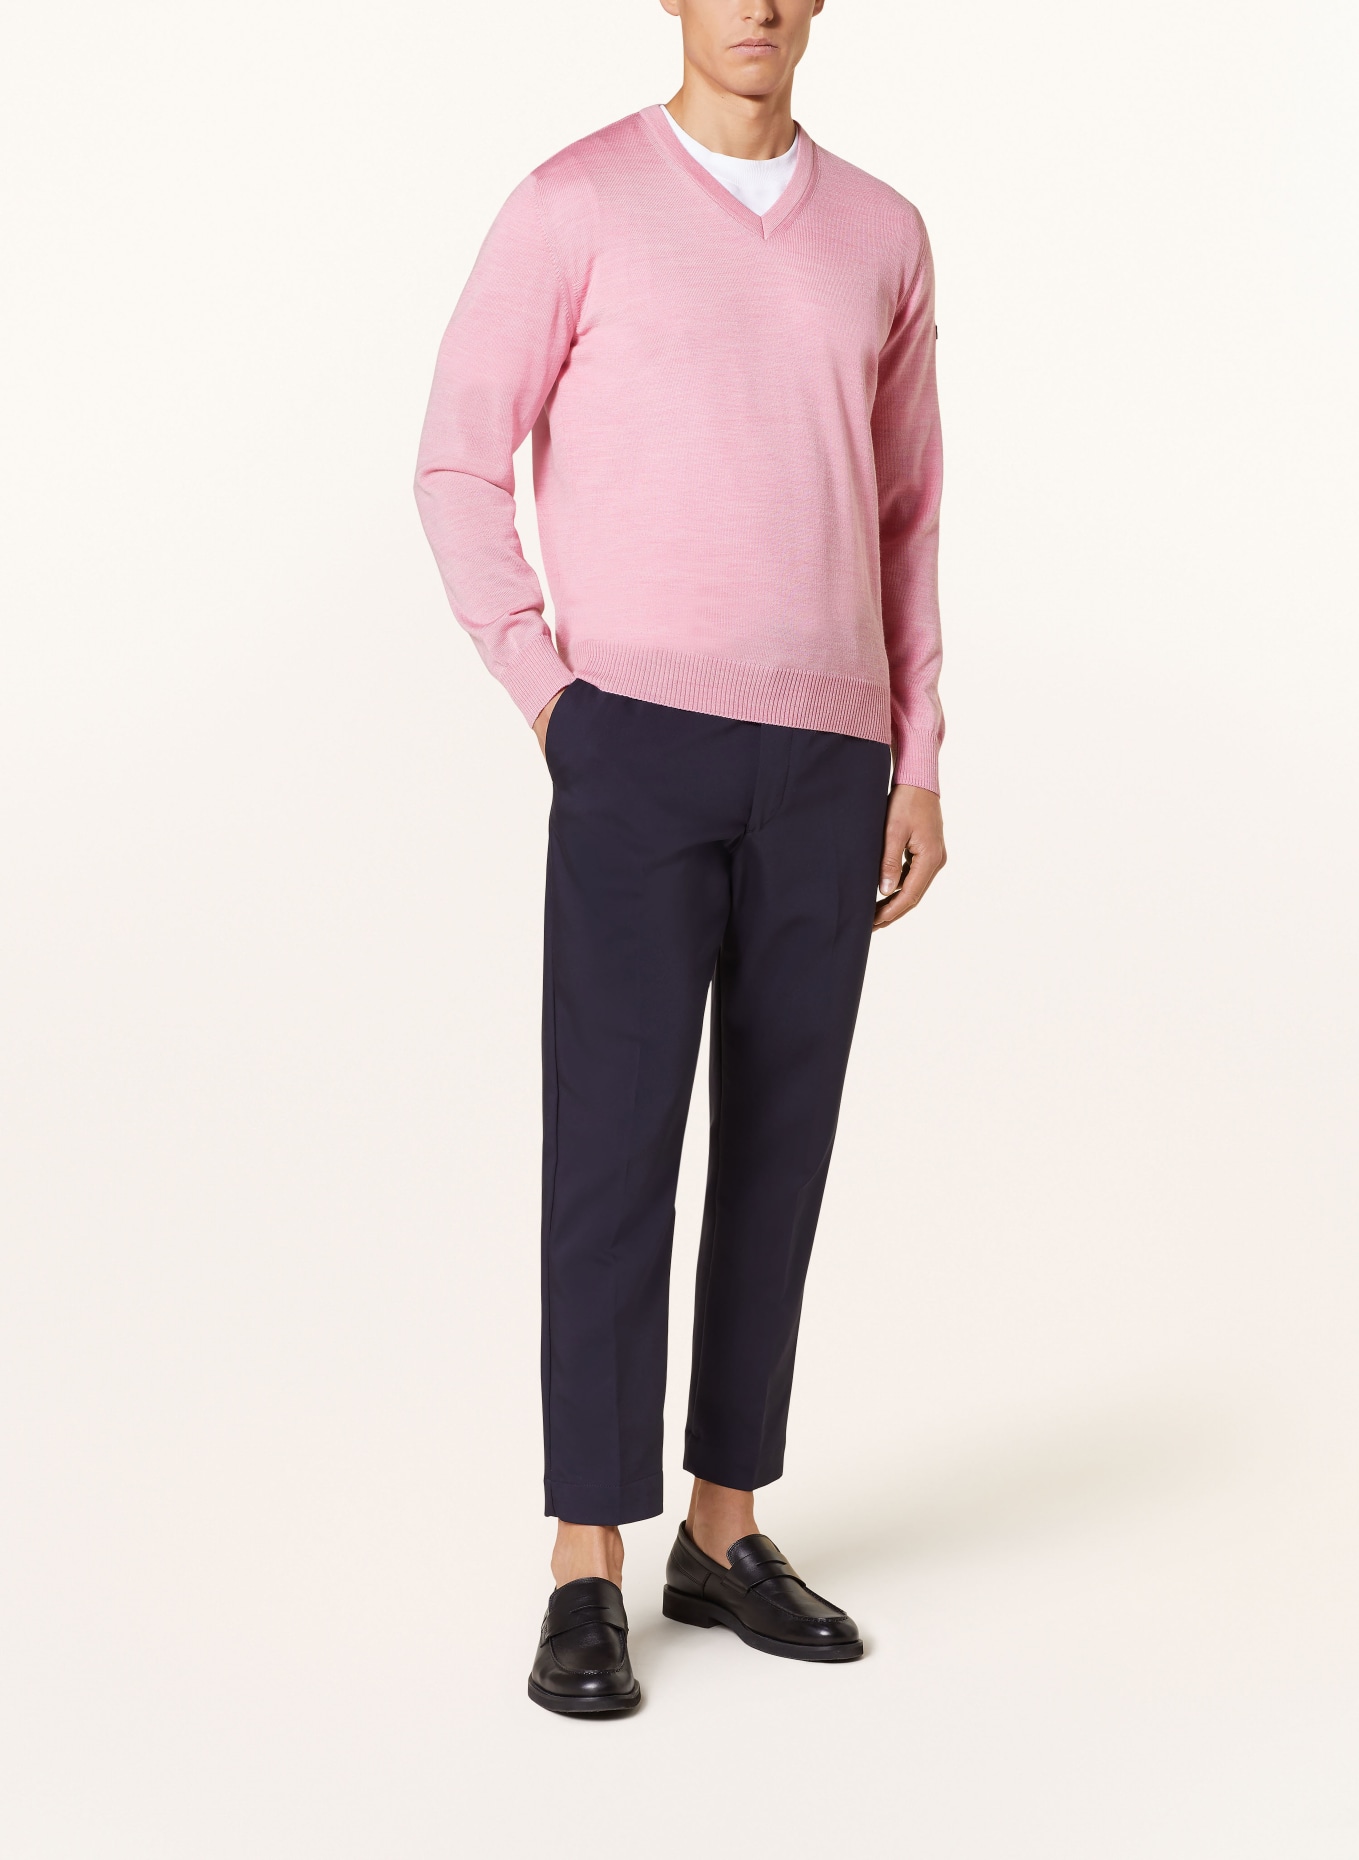 MAERZ MUENCHEN Pullover, Farbe: ROSA (Bild 2)